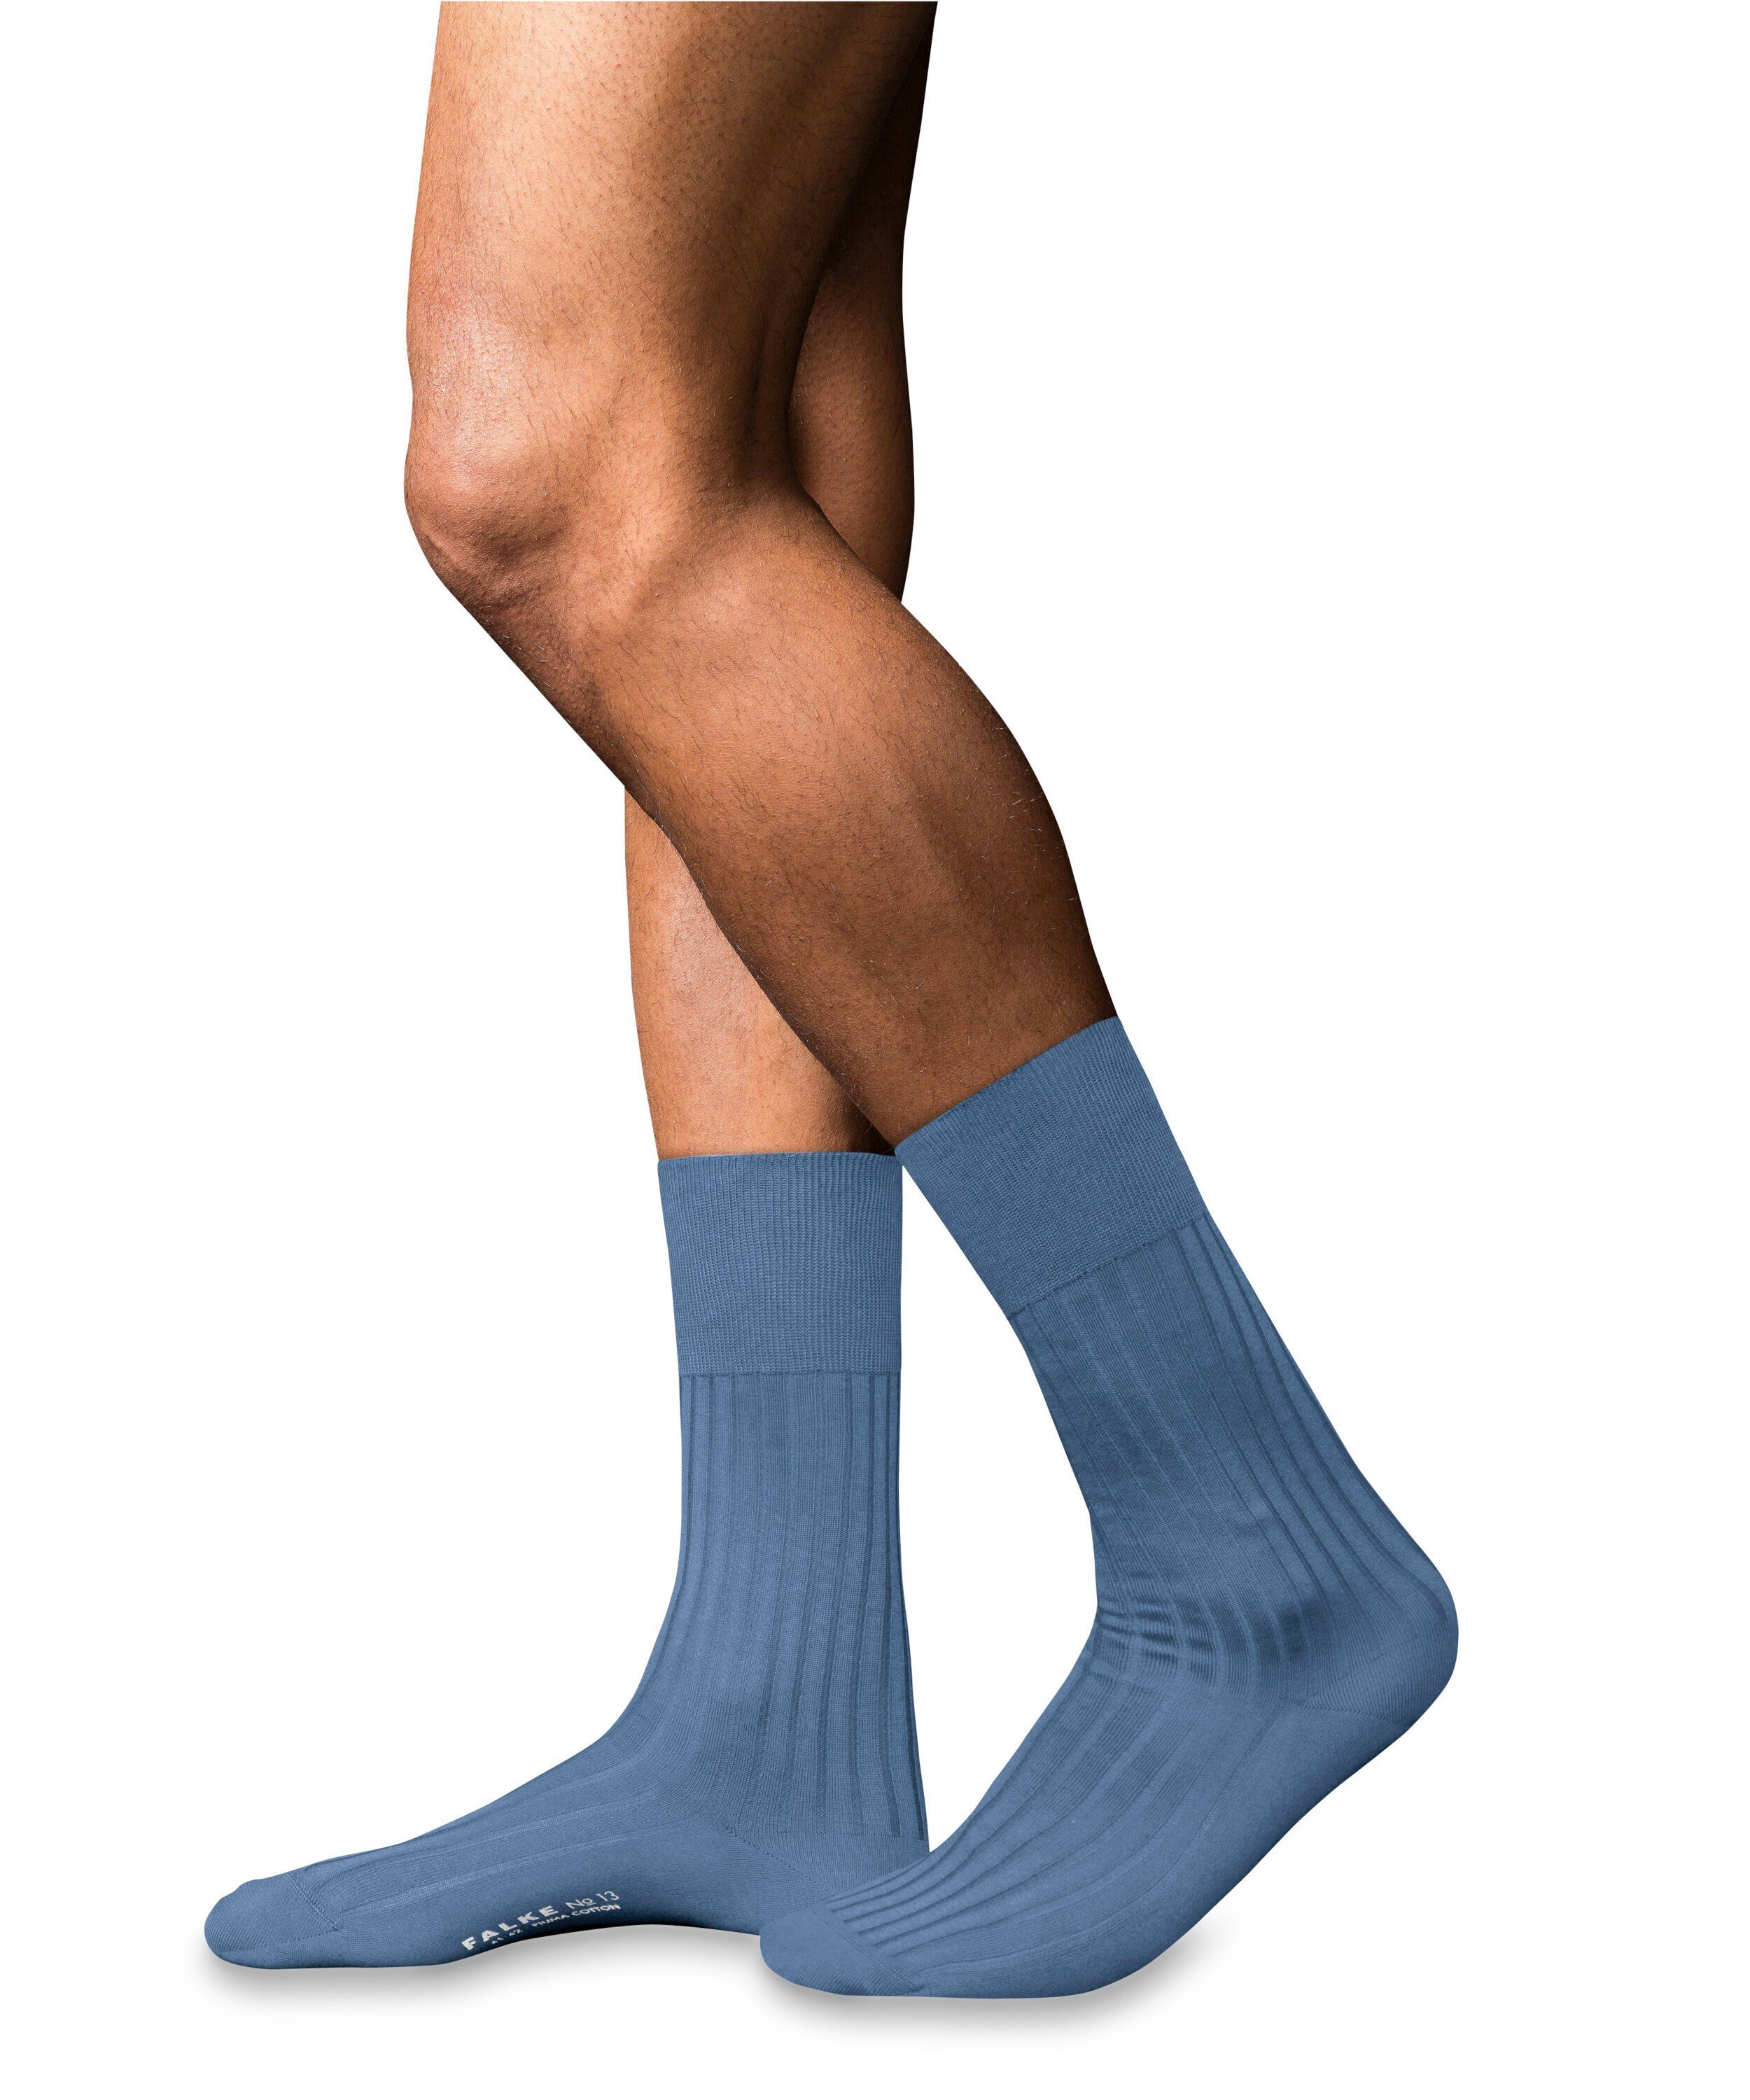 FALKE Socken No. 13 (6845) Cotton dusty Piuma (1-Paar) blue Finest